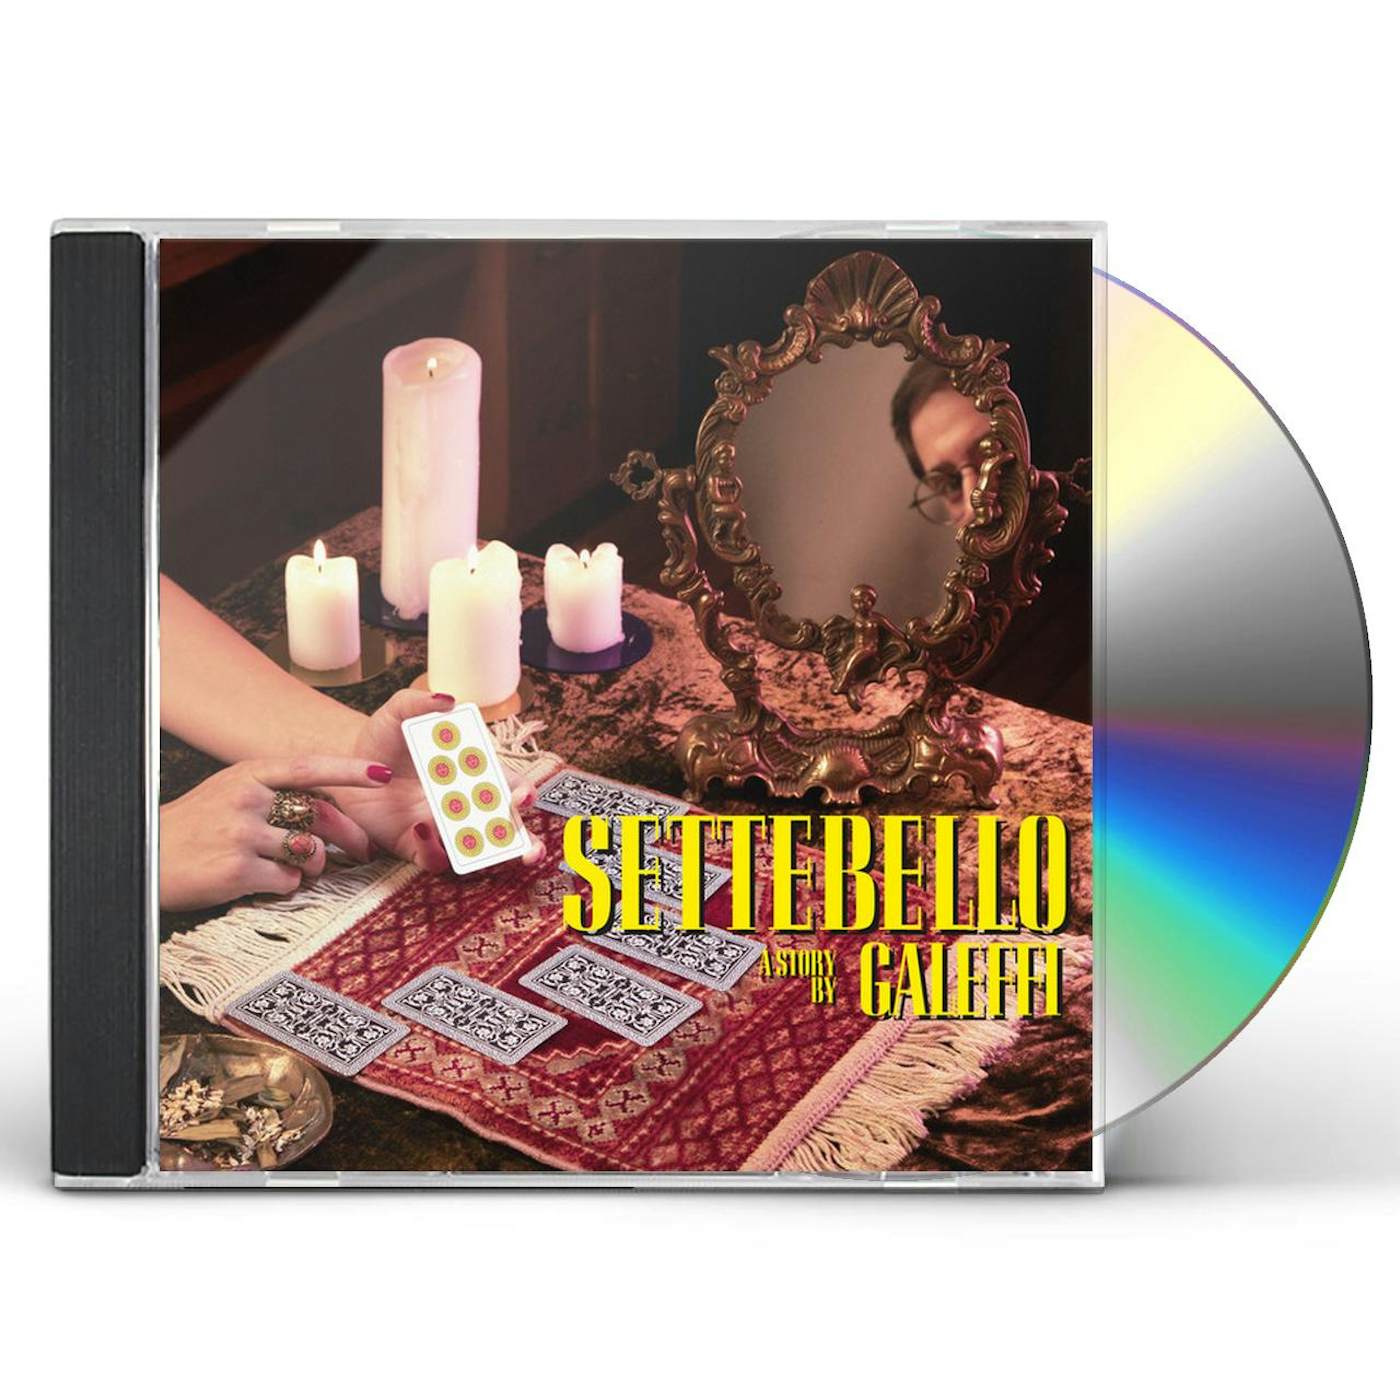 Galeffi SETTEBELLO CD